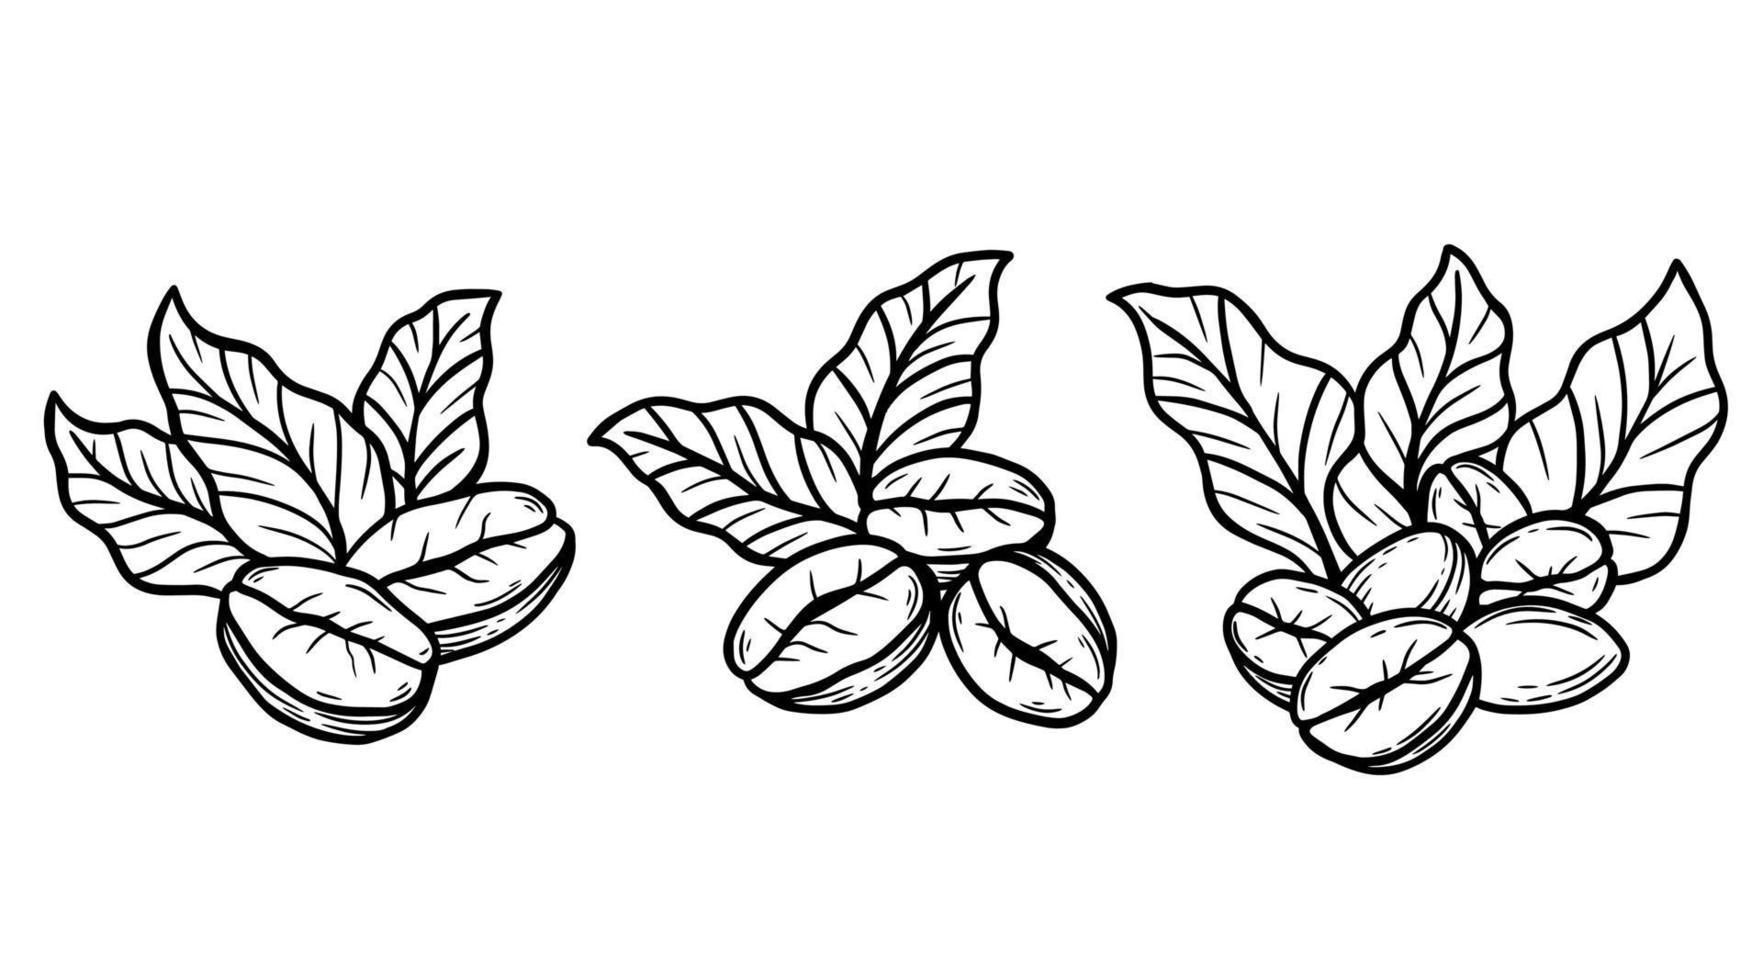 branche de café avec des haricots et des feuilles dessinées à la main pour l'illustration des restaurants de cafés vecteur